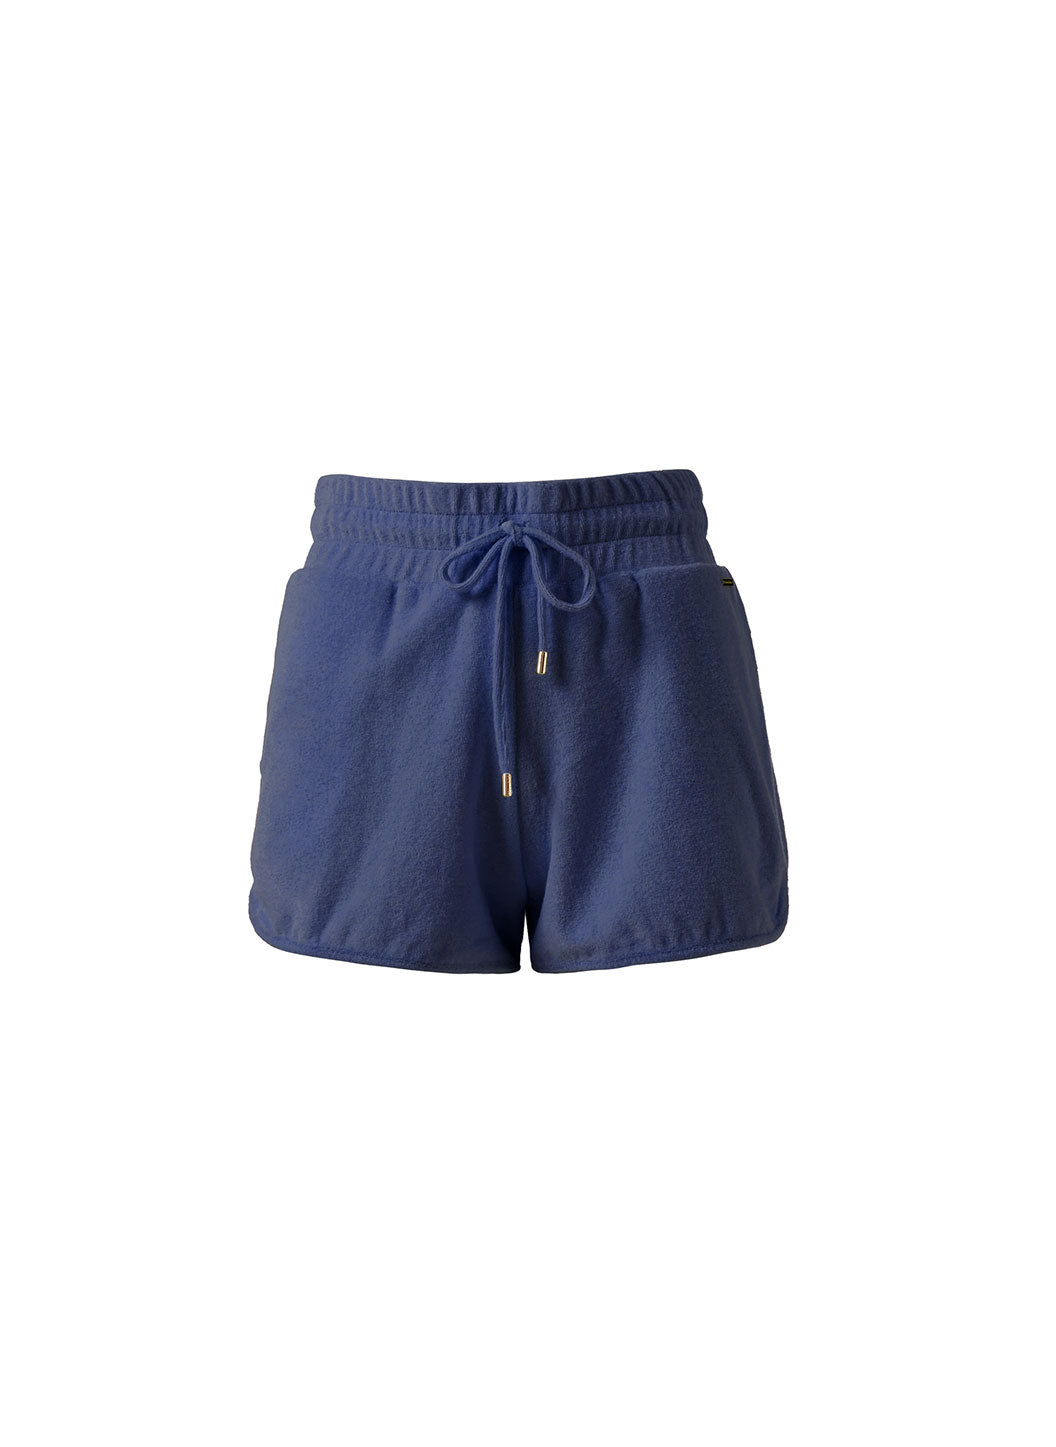 harley-navy-shorts_cutouts